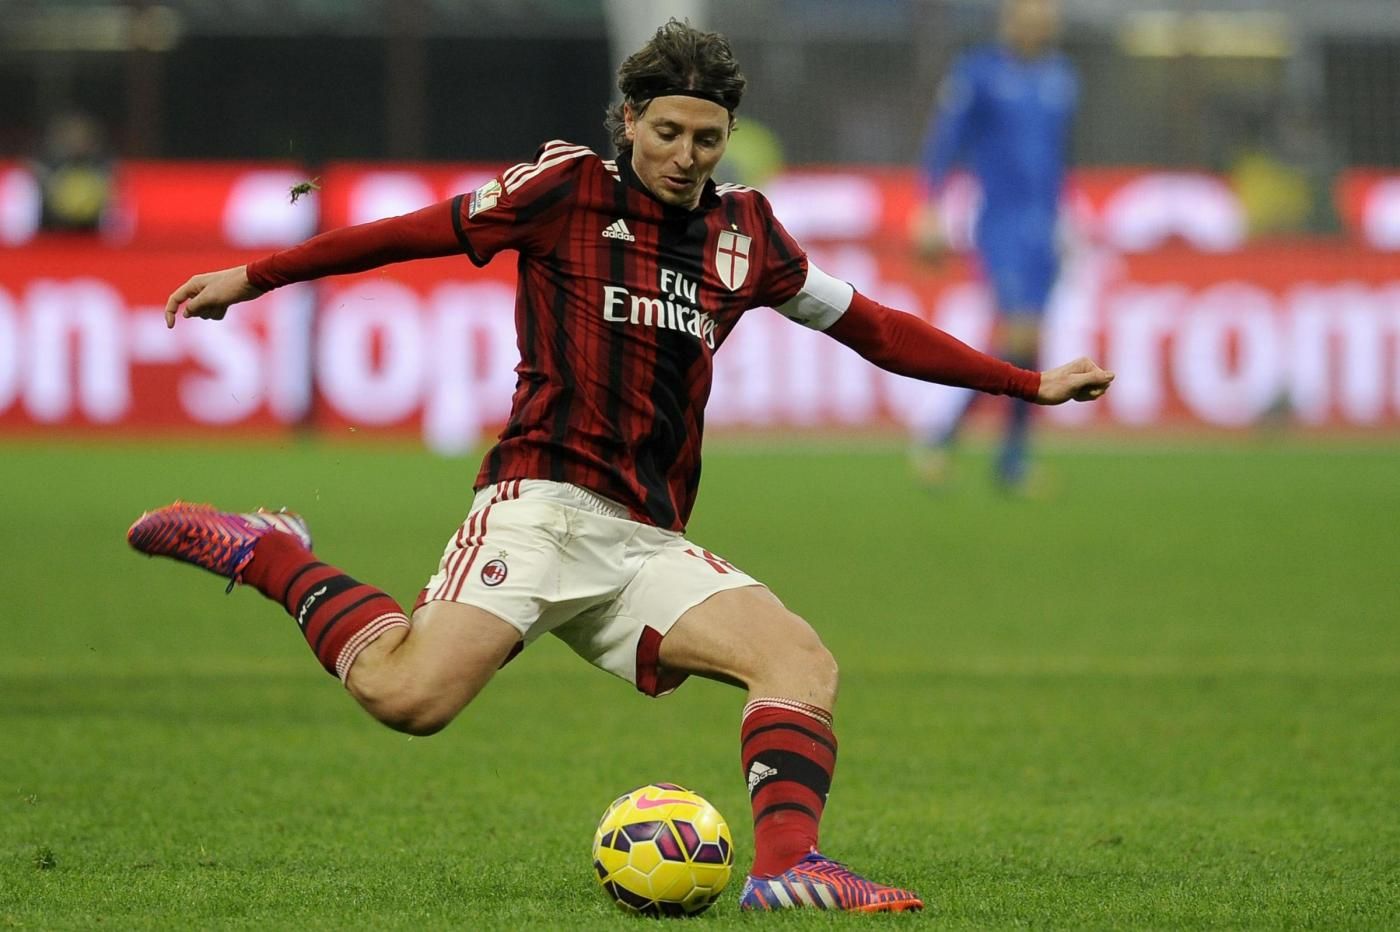 Mercato Milan 9 gennaio: Riccardo Montolivo non ha intenzione di lasciare il club rossonero nella sessione invernale di calciomercato.